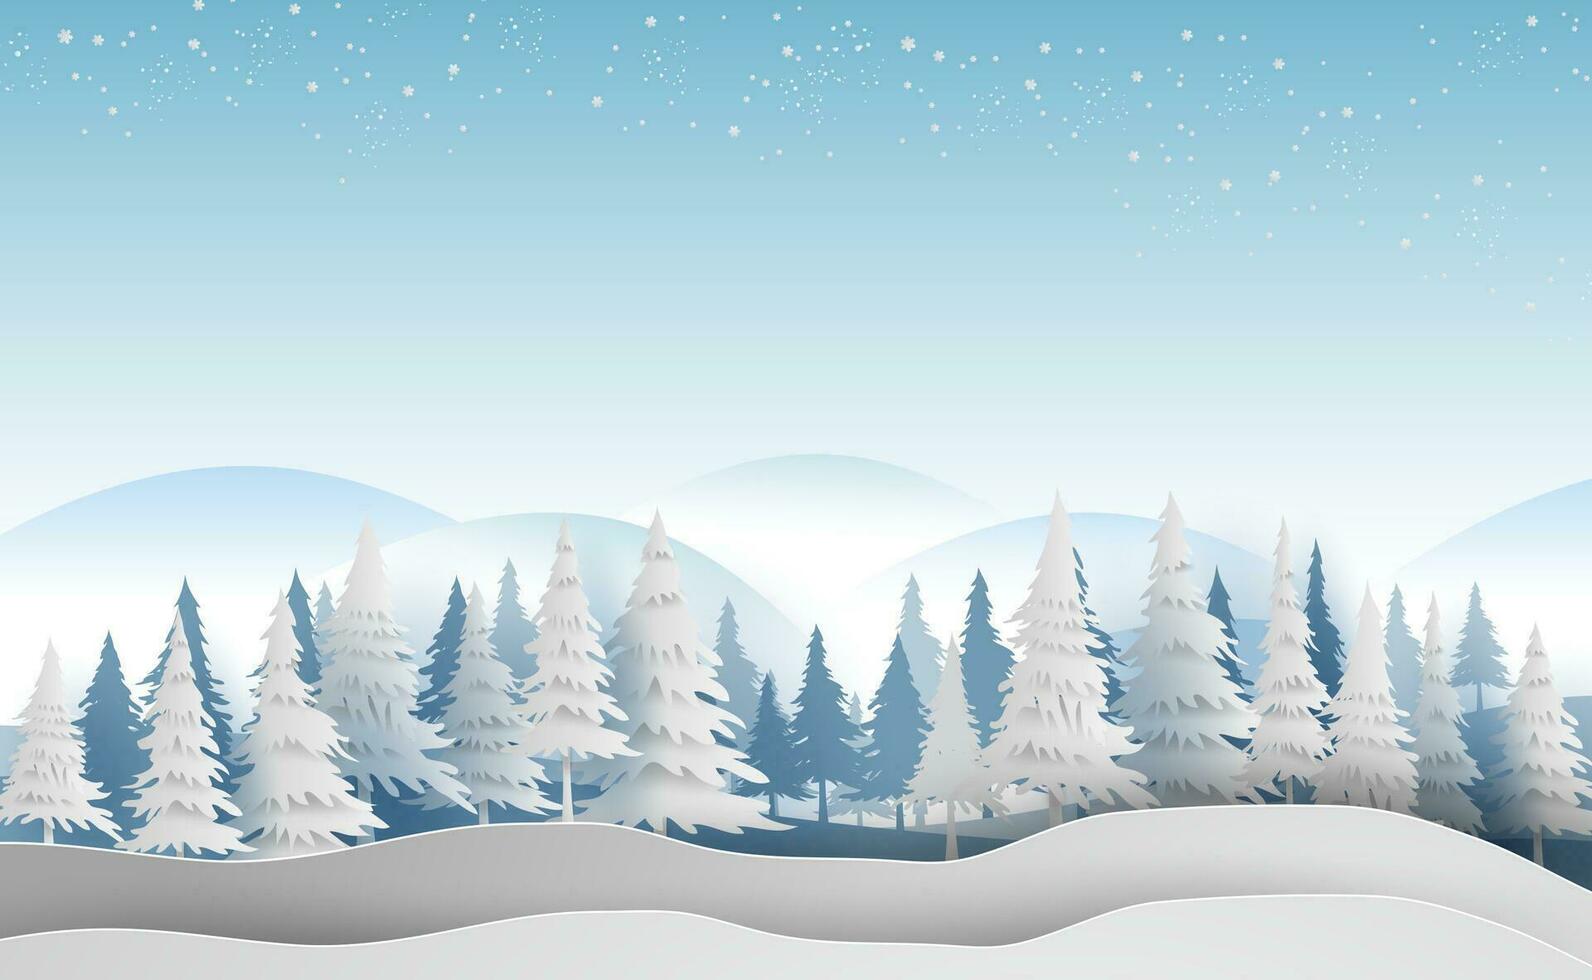 paisaje alegre Navidad y nuevo año en Días festivos paisaje con bosque invierno copos de nieve temporada paisaje.creativo diseño papel Arte y cortar estilo para tarjeta y Navidad tarjeta postal vector ilustración.eps10